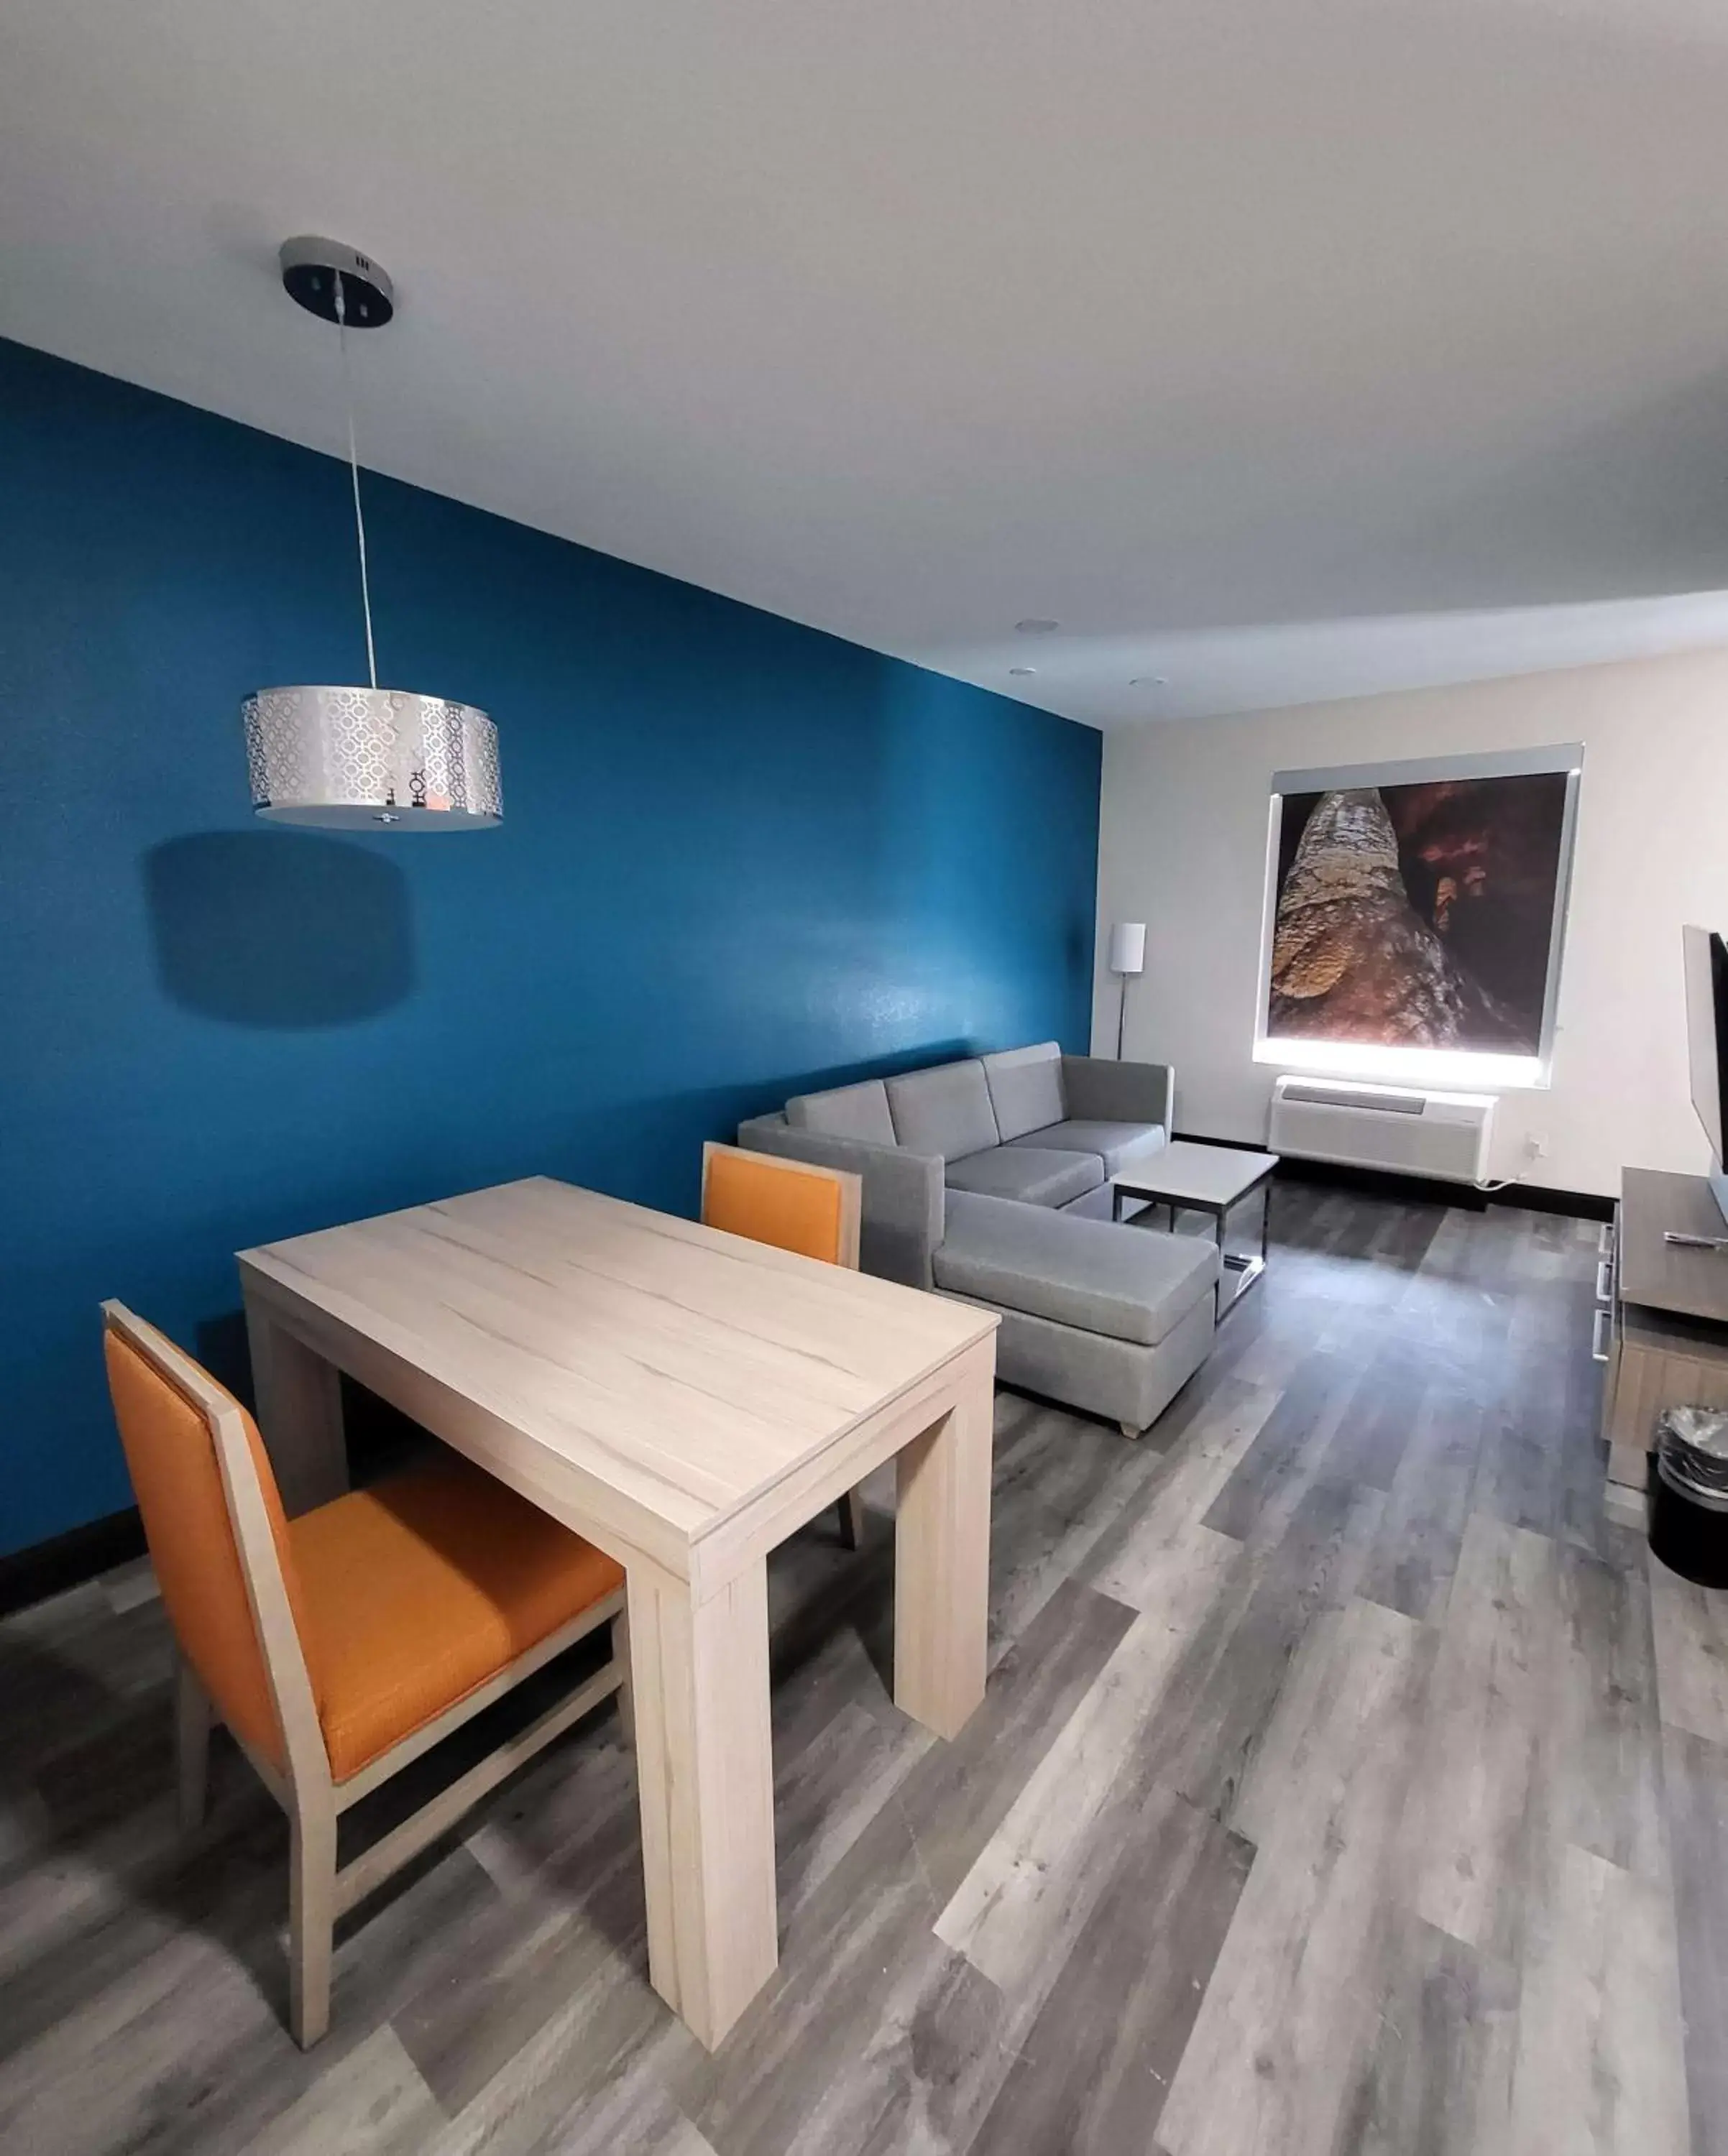 Bedroom, Seating Area in Best Western Plus Executive Residency Carlsbad Hotel